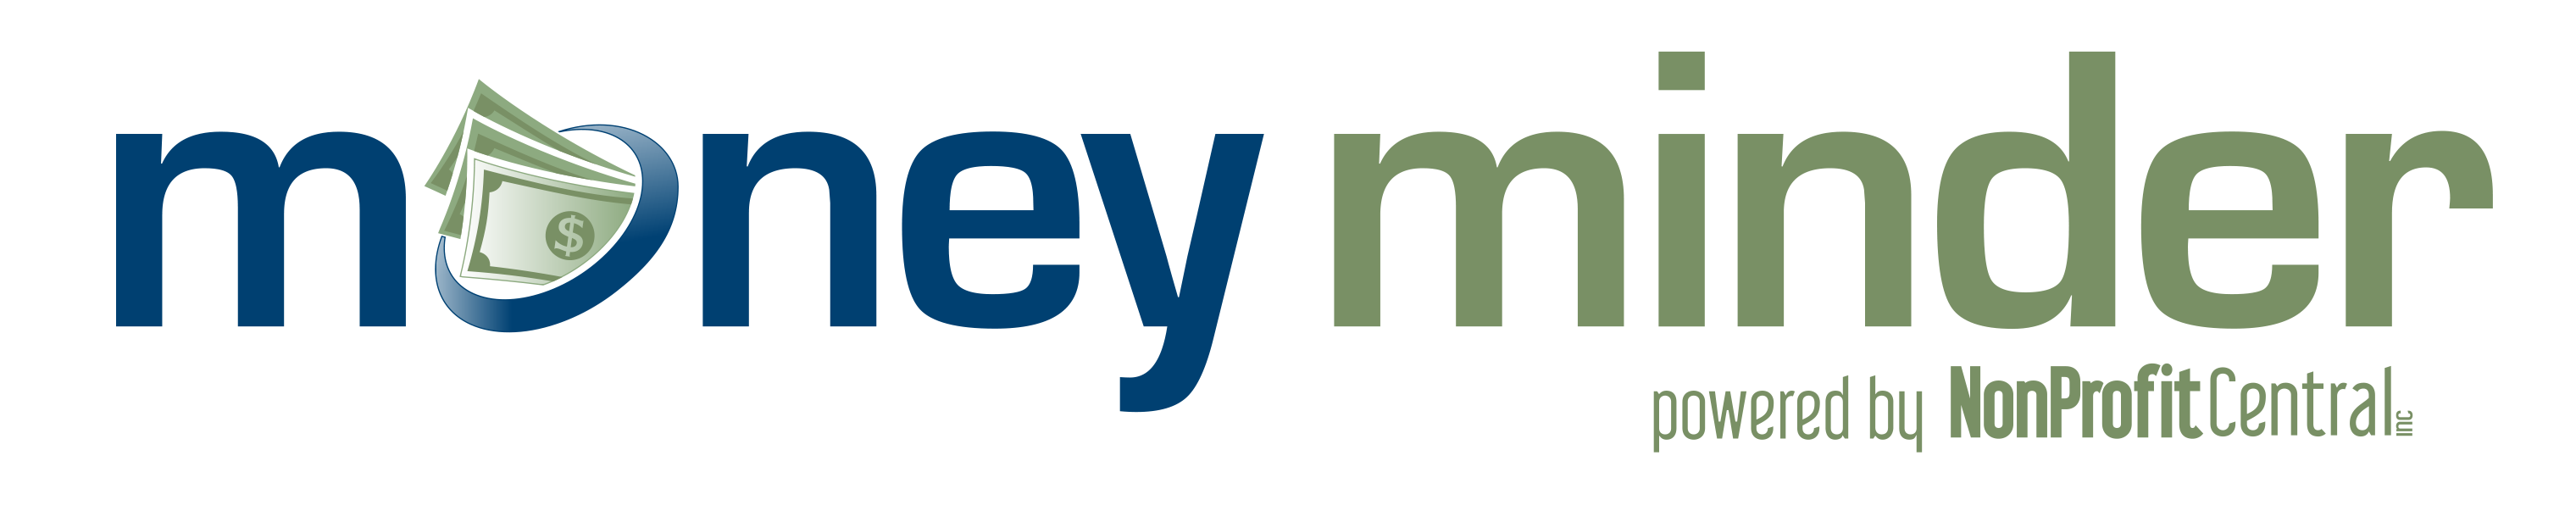 MoneyMinder Logo 2014